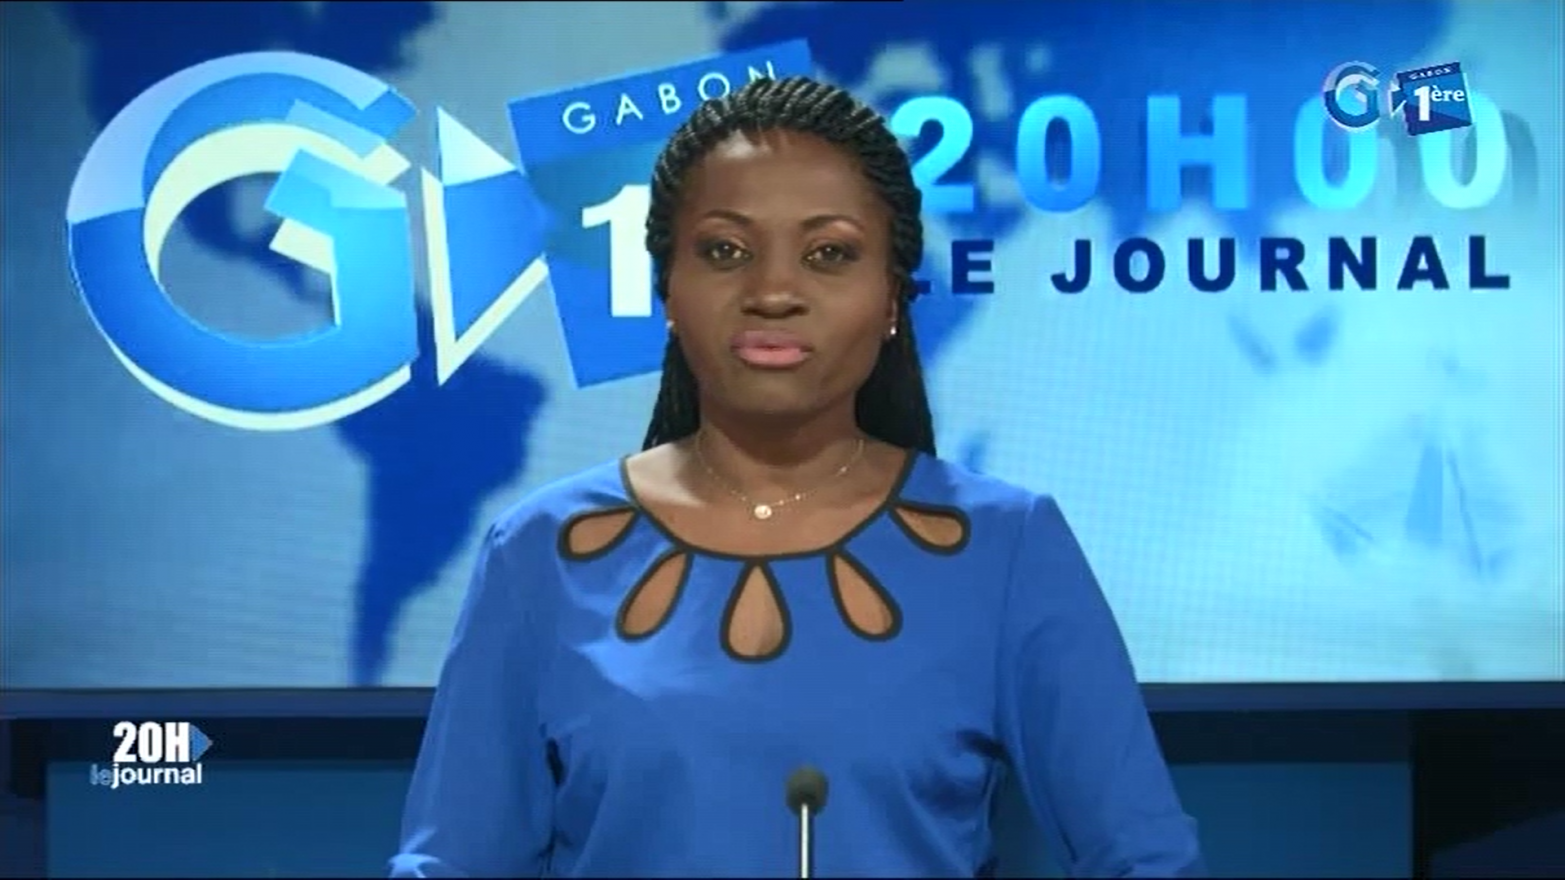 Journal télévisé de 20h de Gabon 1ère du 24 août 2019
